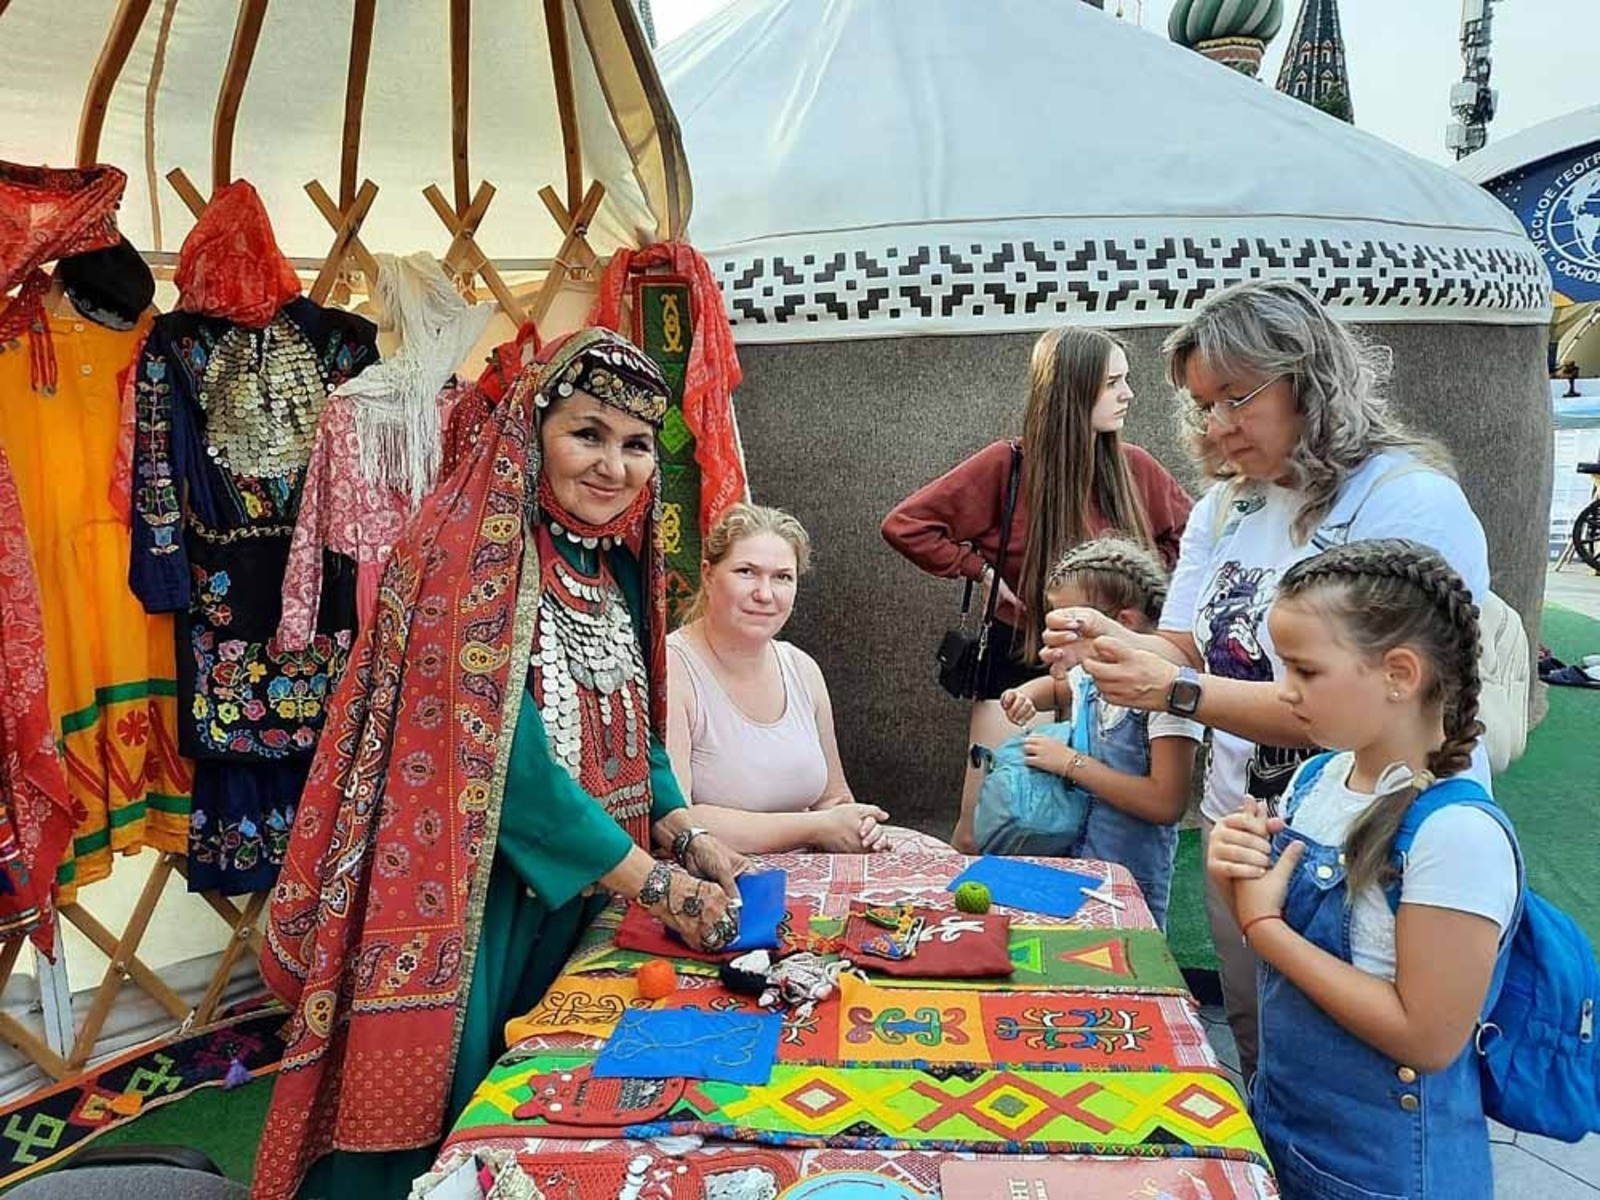 из архивов студии башкирского народного костюма «Селтэр» Традиционные башкирские женские украшения привлекают и детей, и взрослых.